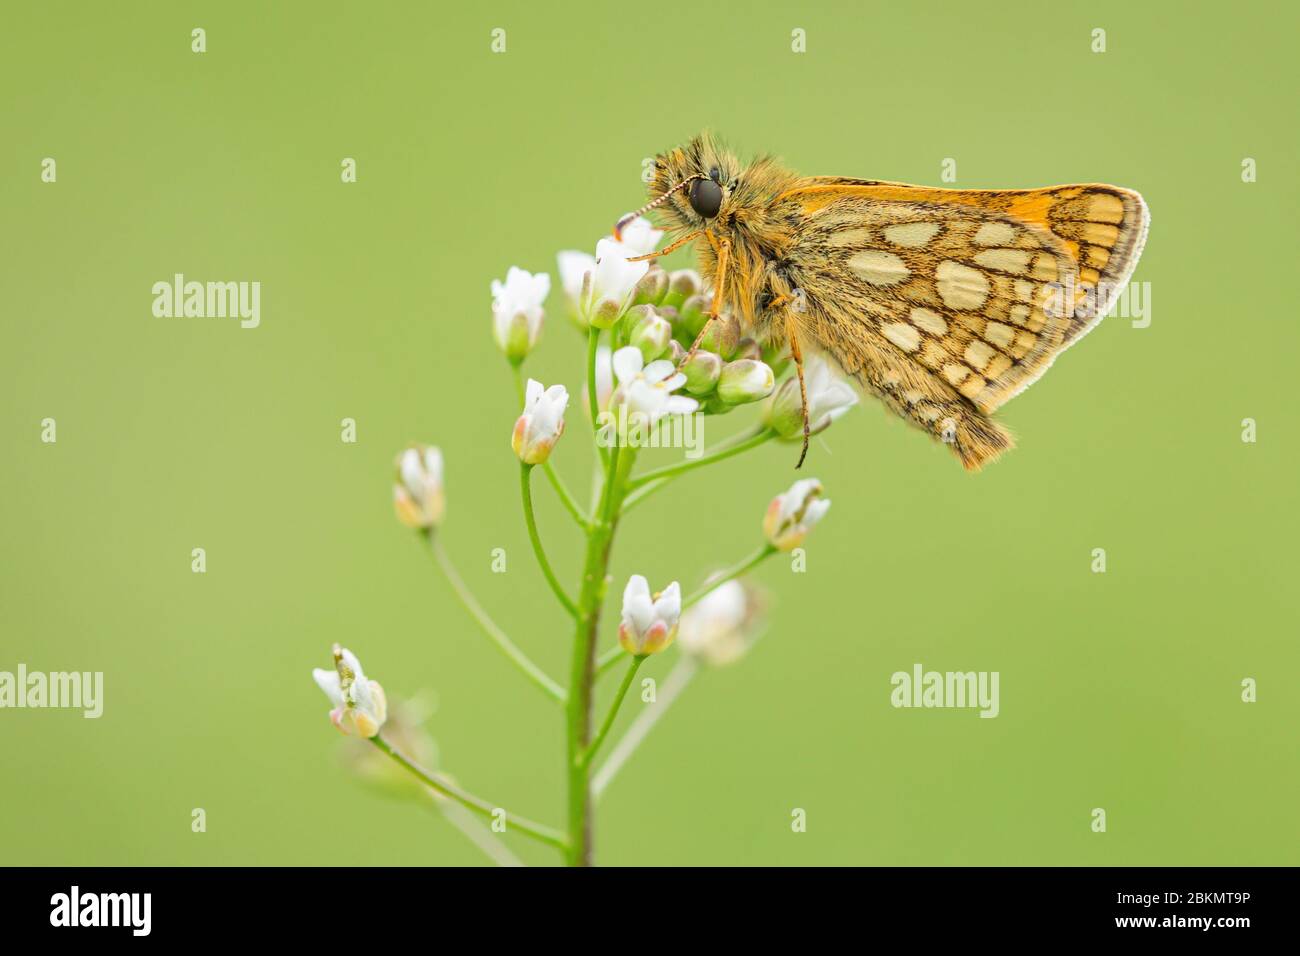 Gros plan d'un petit papillon boisé, un skipper à carreaux, avec des yeux bruns et des taches jaunes sur les ailes orange, assis sur une fleur blanche fragile. Banque D'Images